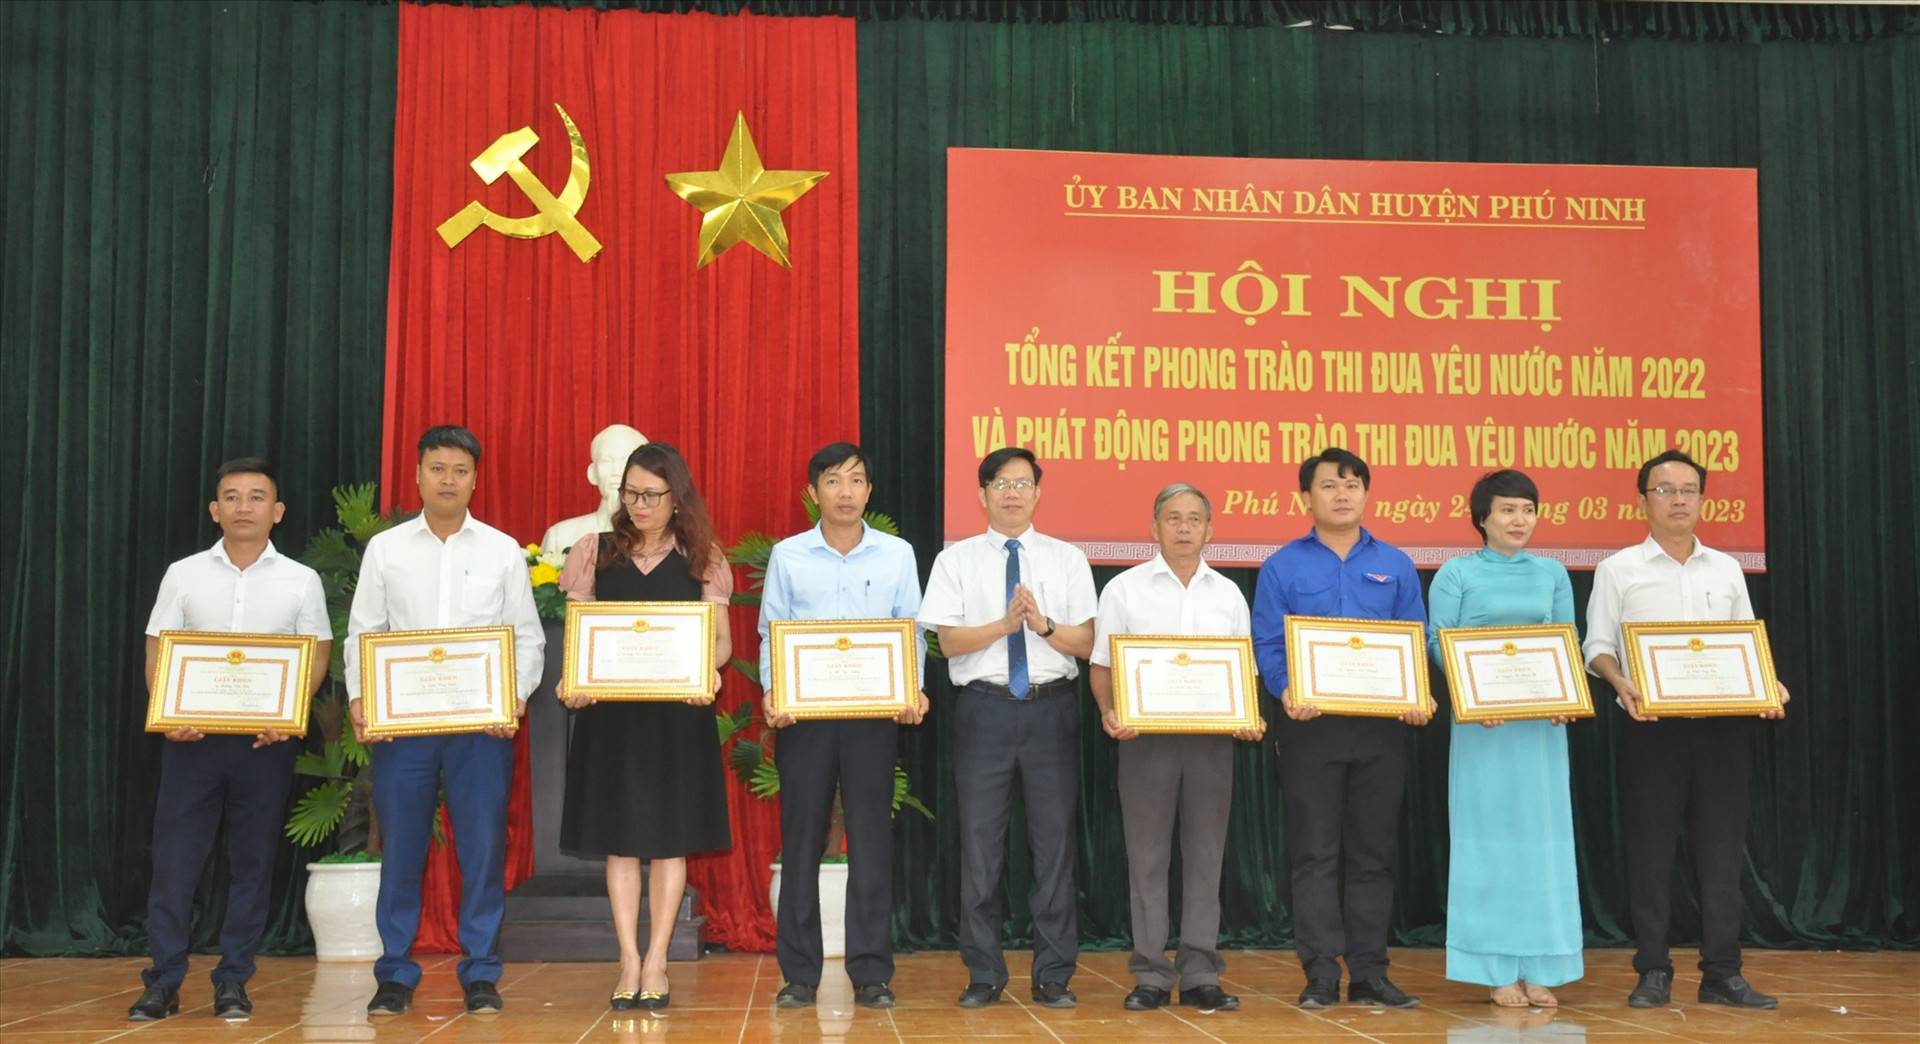 Lãnh đạo UBND huyện Phú Ninh trao tặng Giấy khen của UBND huyện cho các tập thể có thành tích xuất sắc trong phào thi đua năm 2022. Ảnh: N.Đ